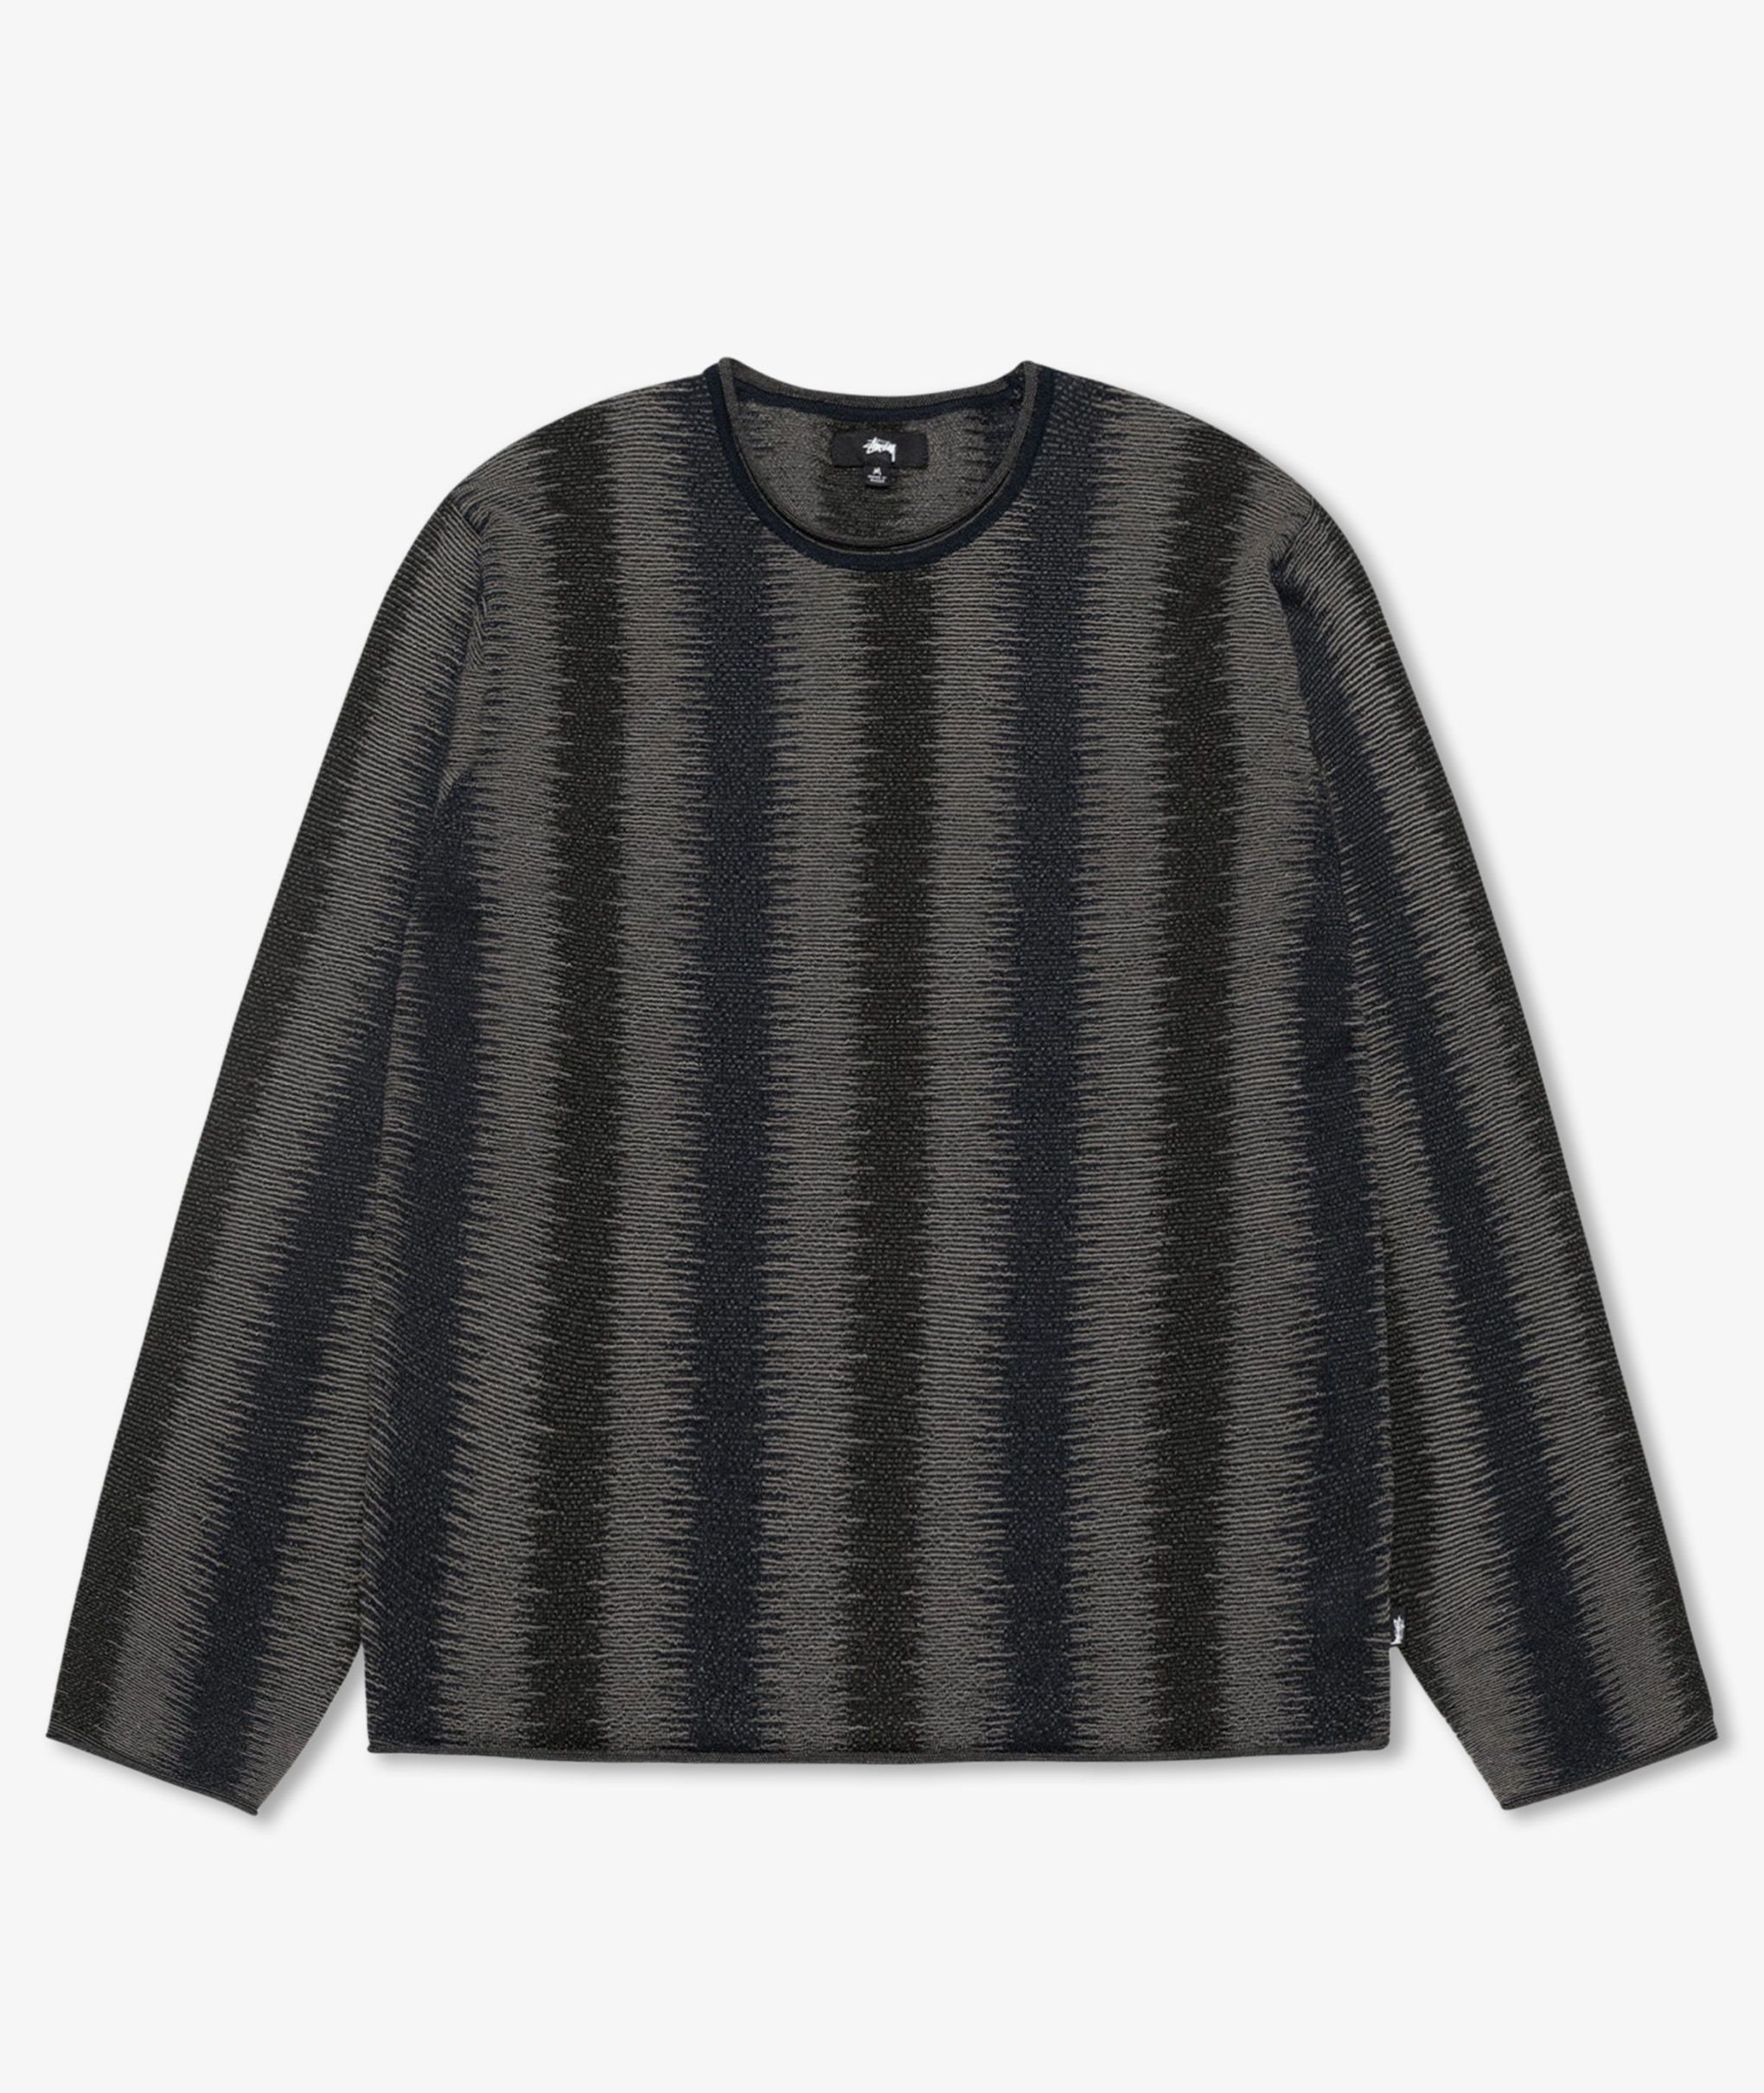 https://www.norsestore.com/shared/174/123/stuessy-shadow-stripe-sweater_u.jpg